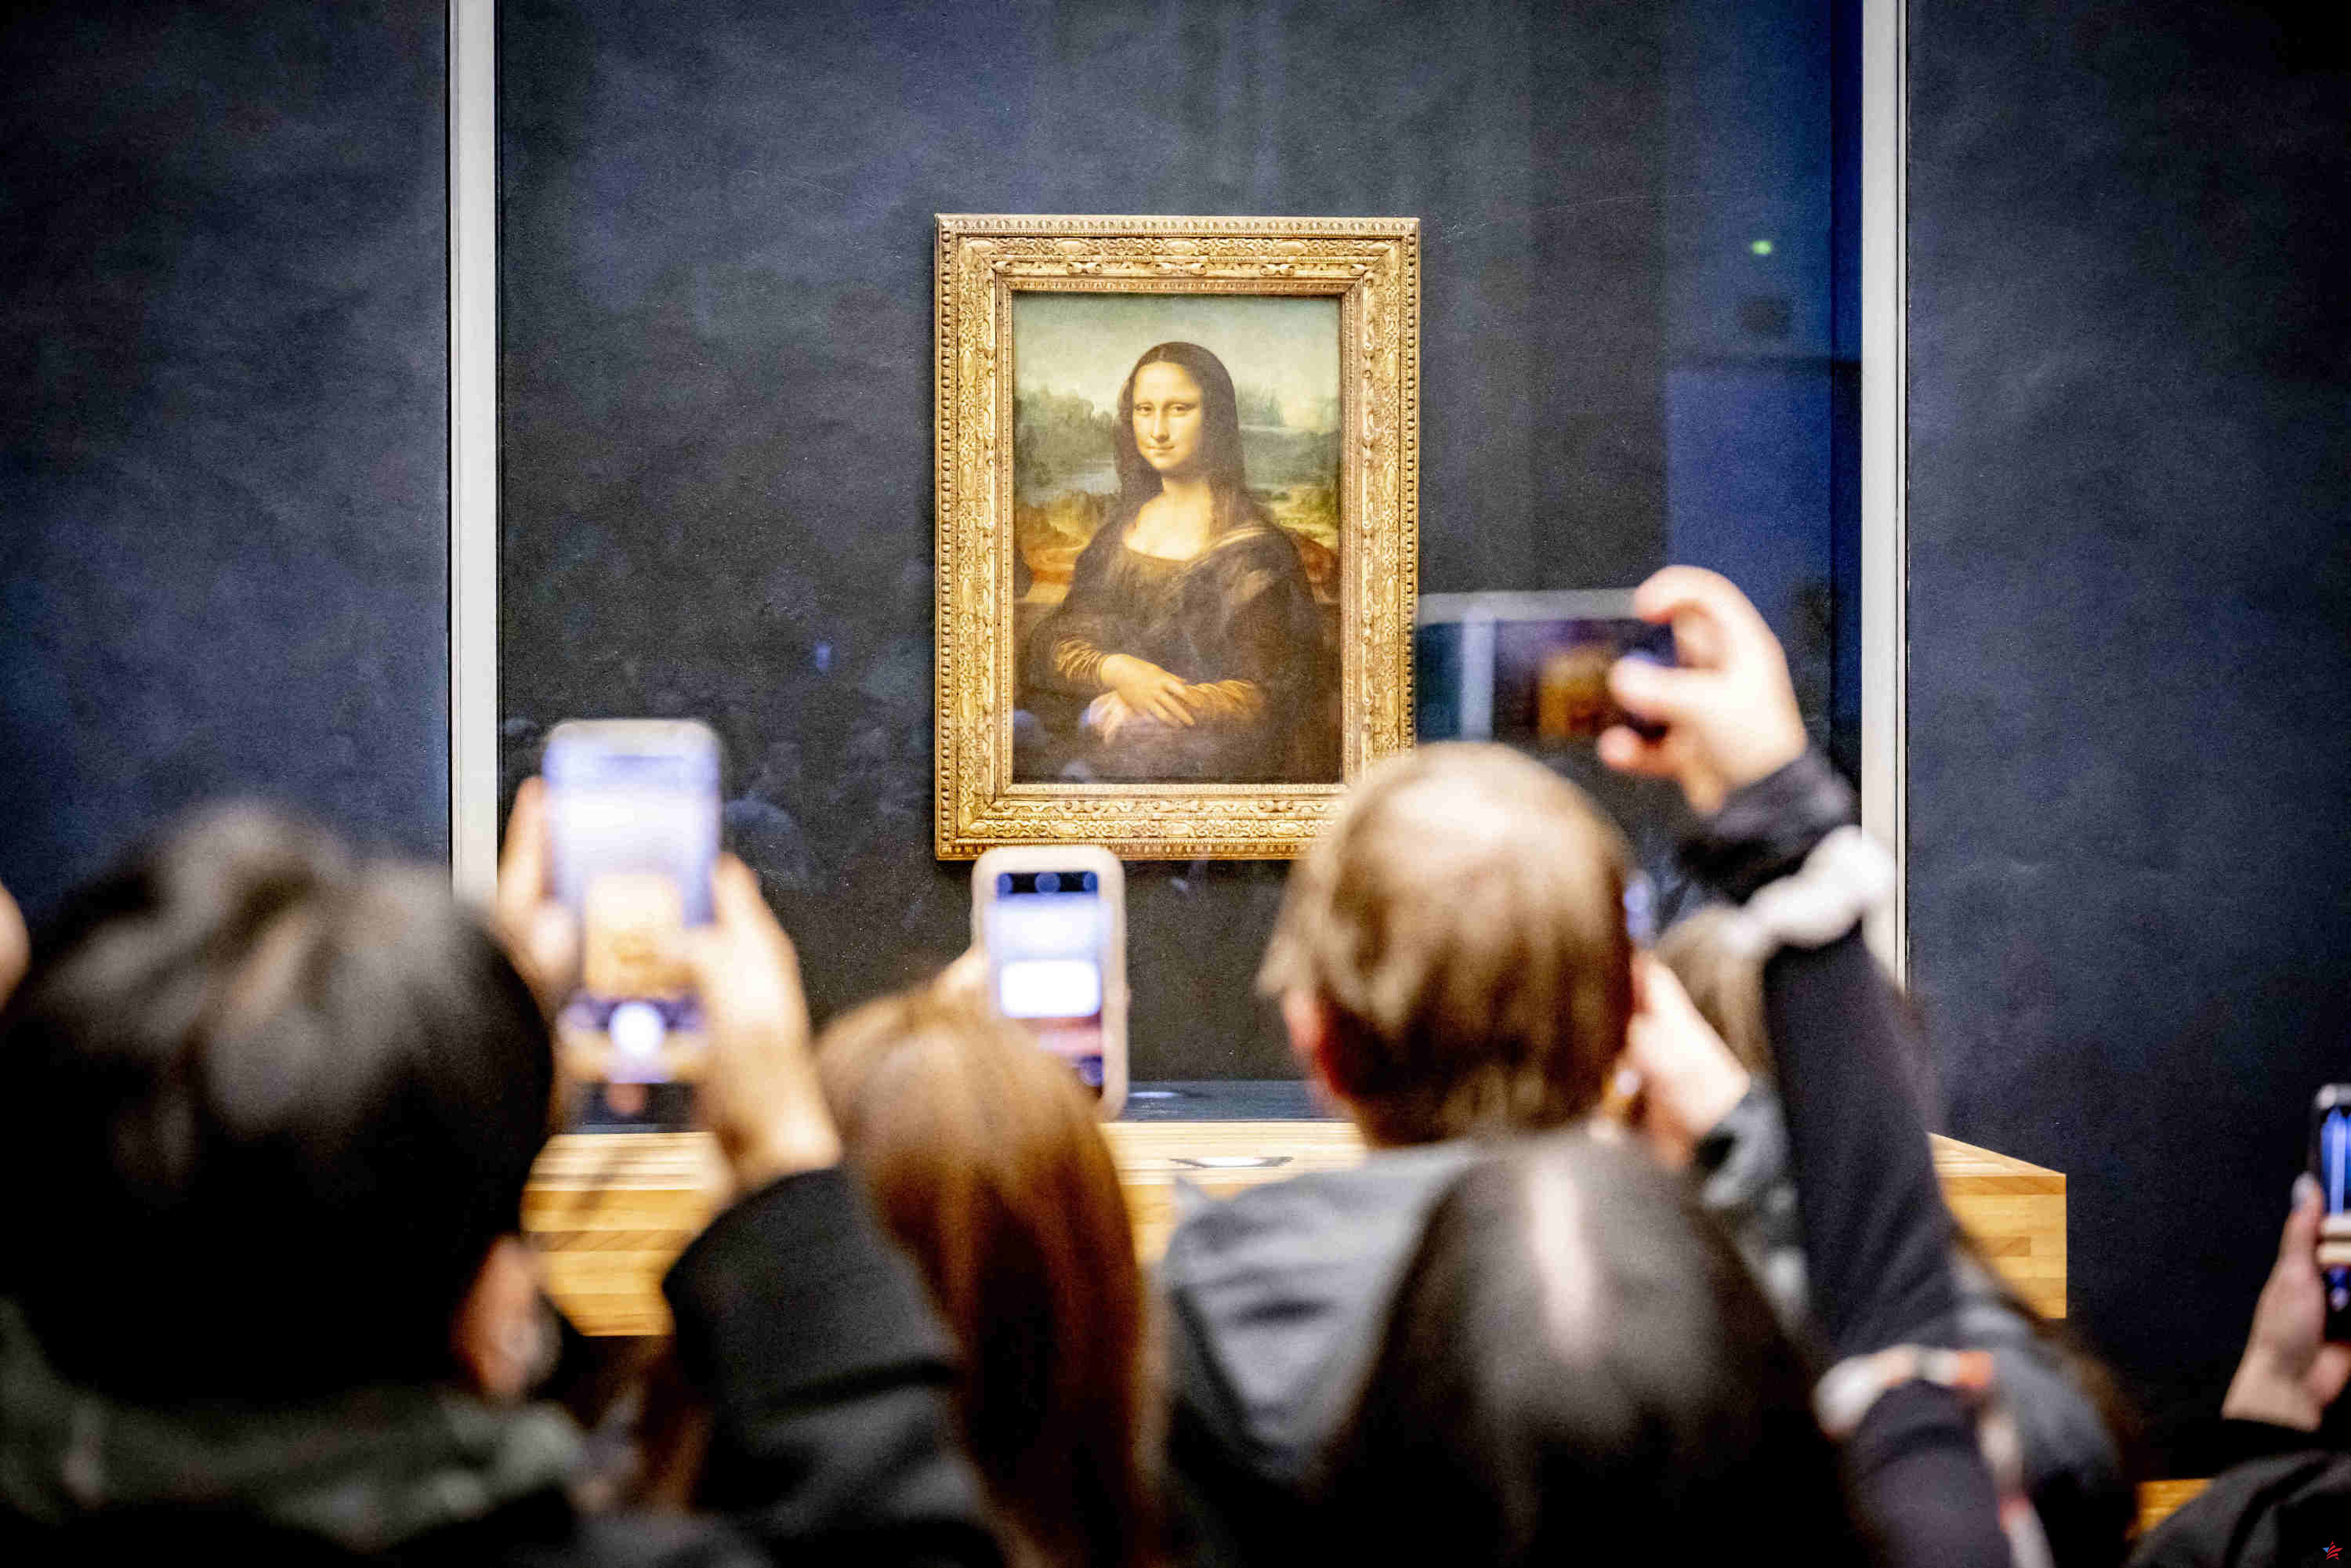 Una misteriosa asociación pide la restitución de la Mona Lisa, el Consejo de Estado investiga el asunto